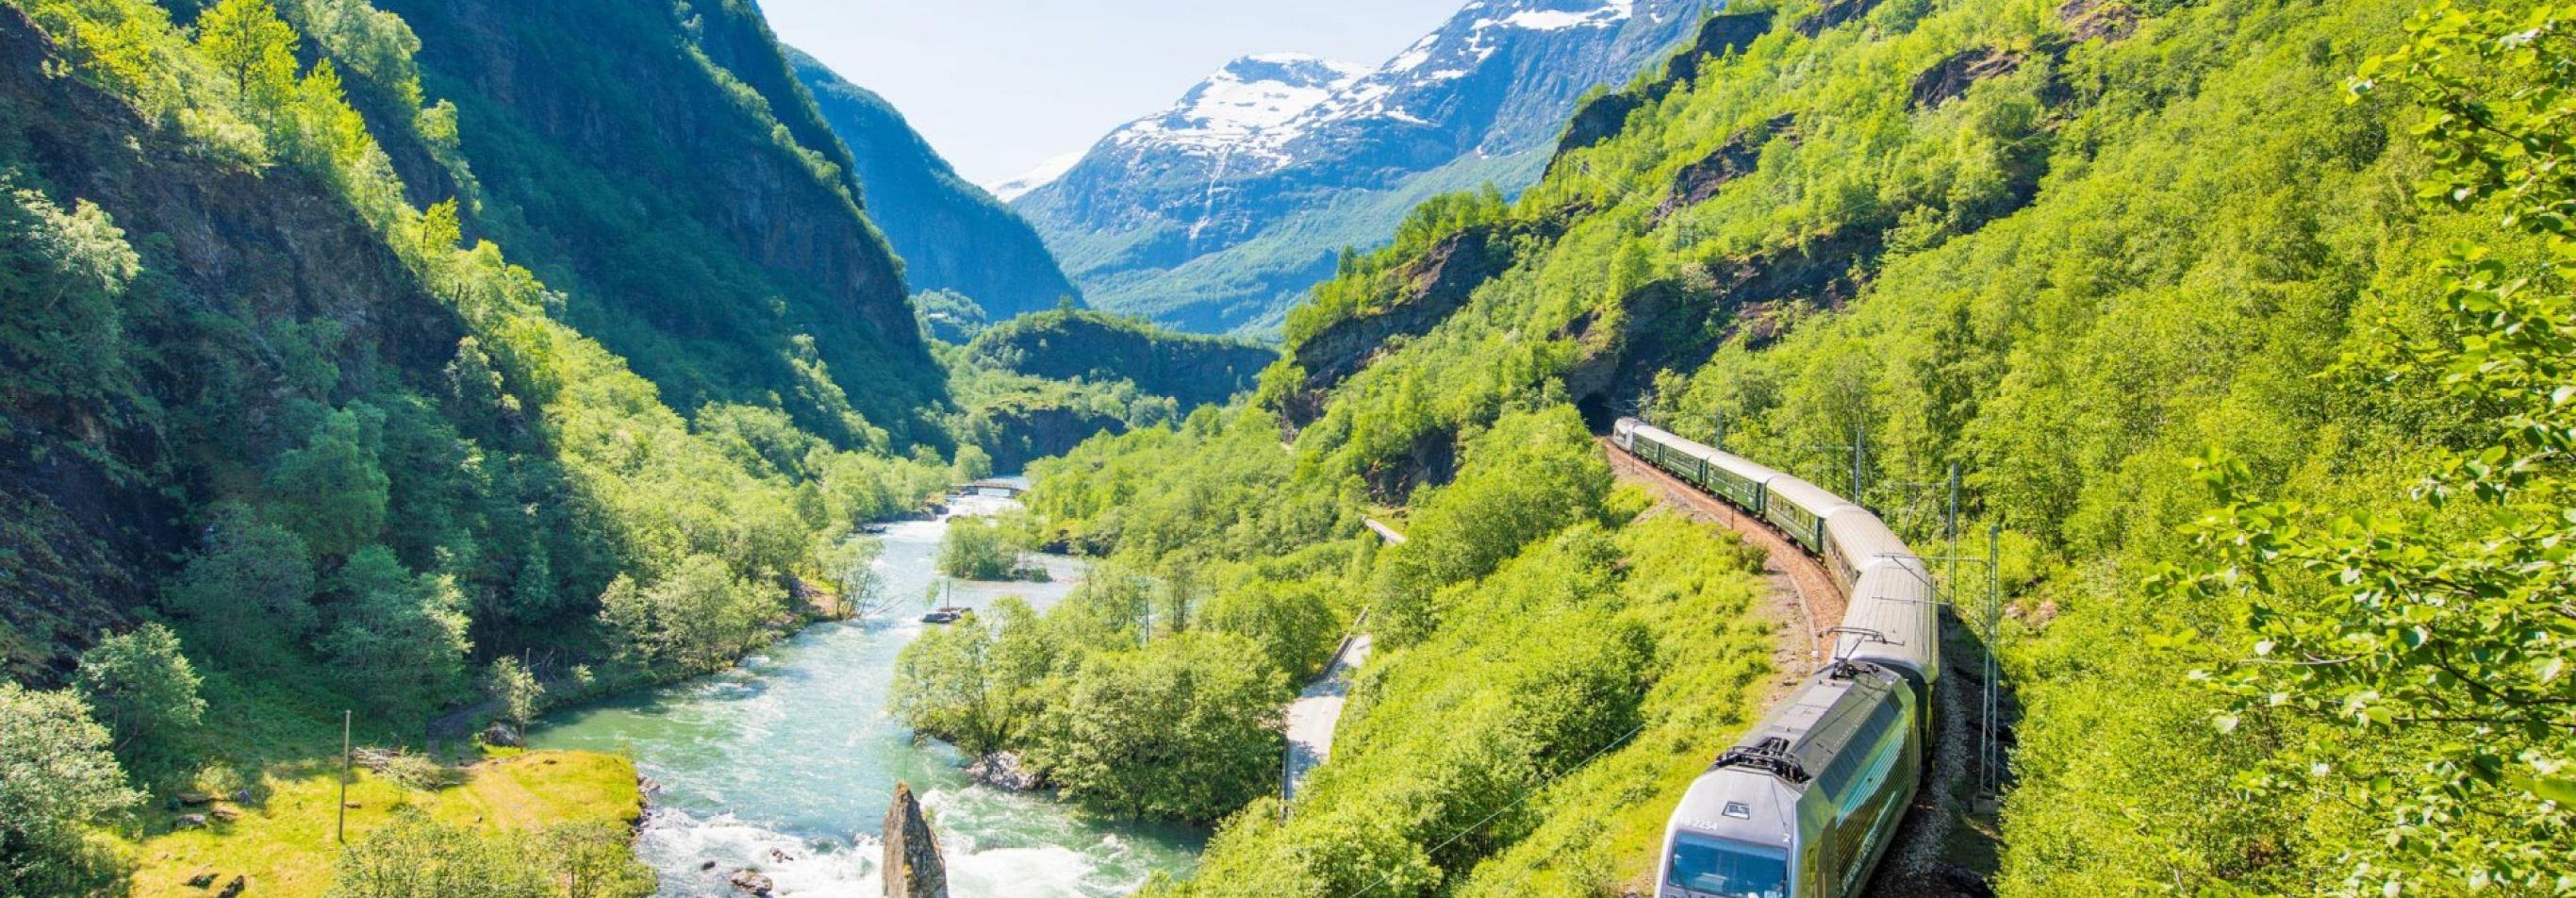 Norvegia - Norway in a Nutshell: Norvegia eco friendly